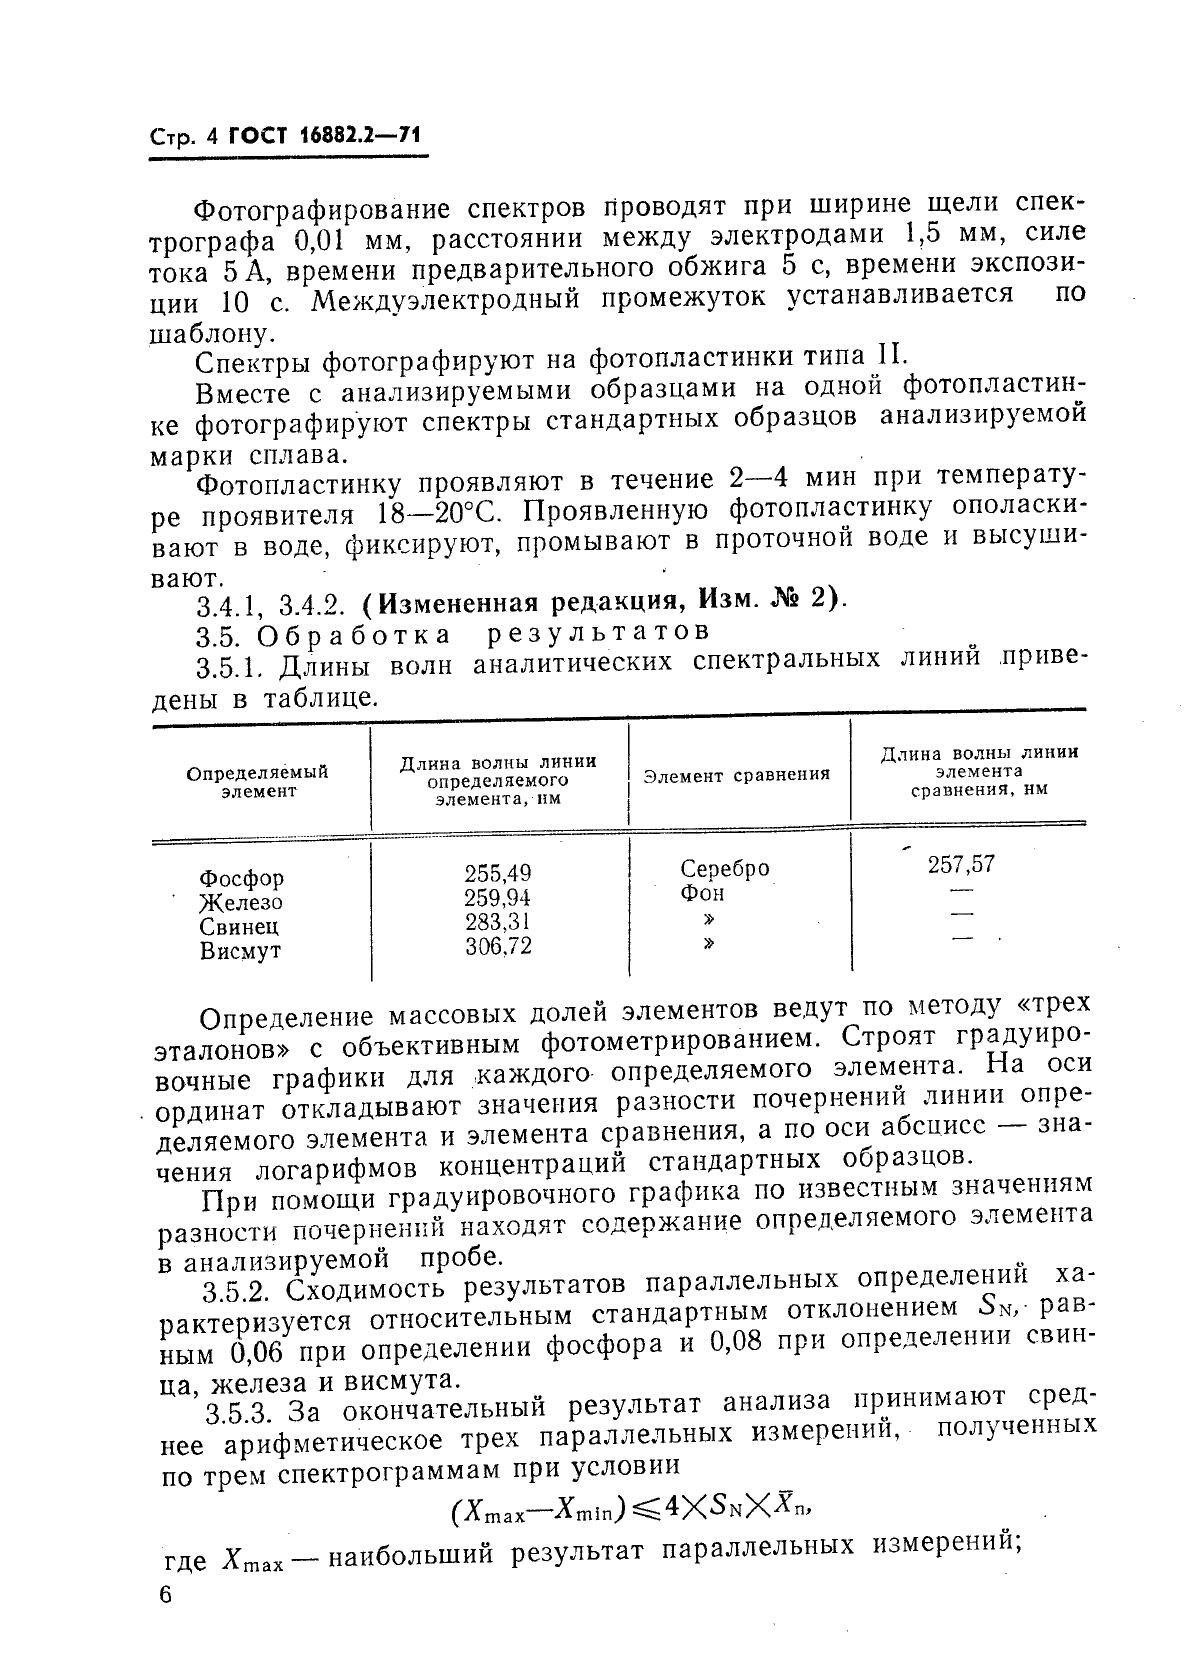 ГОСТ 16882.2-71 Серебряно-медно-фосфорные припои. Методы определения массовой доли фосфора, свинца, железа и висмута (фото 4 из 5)